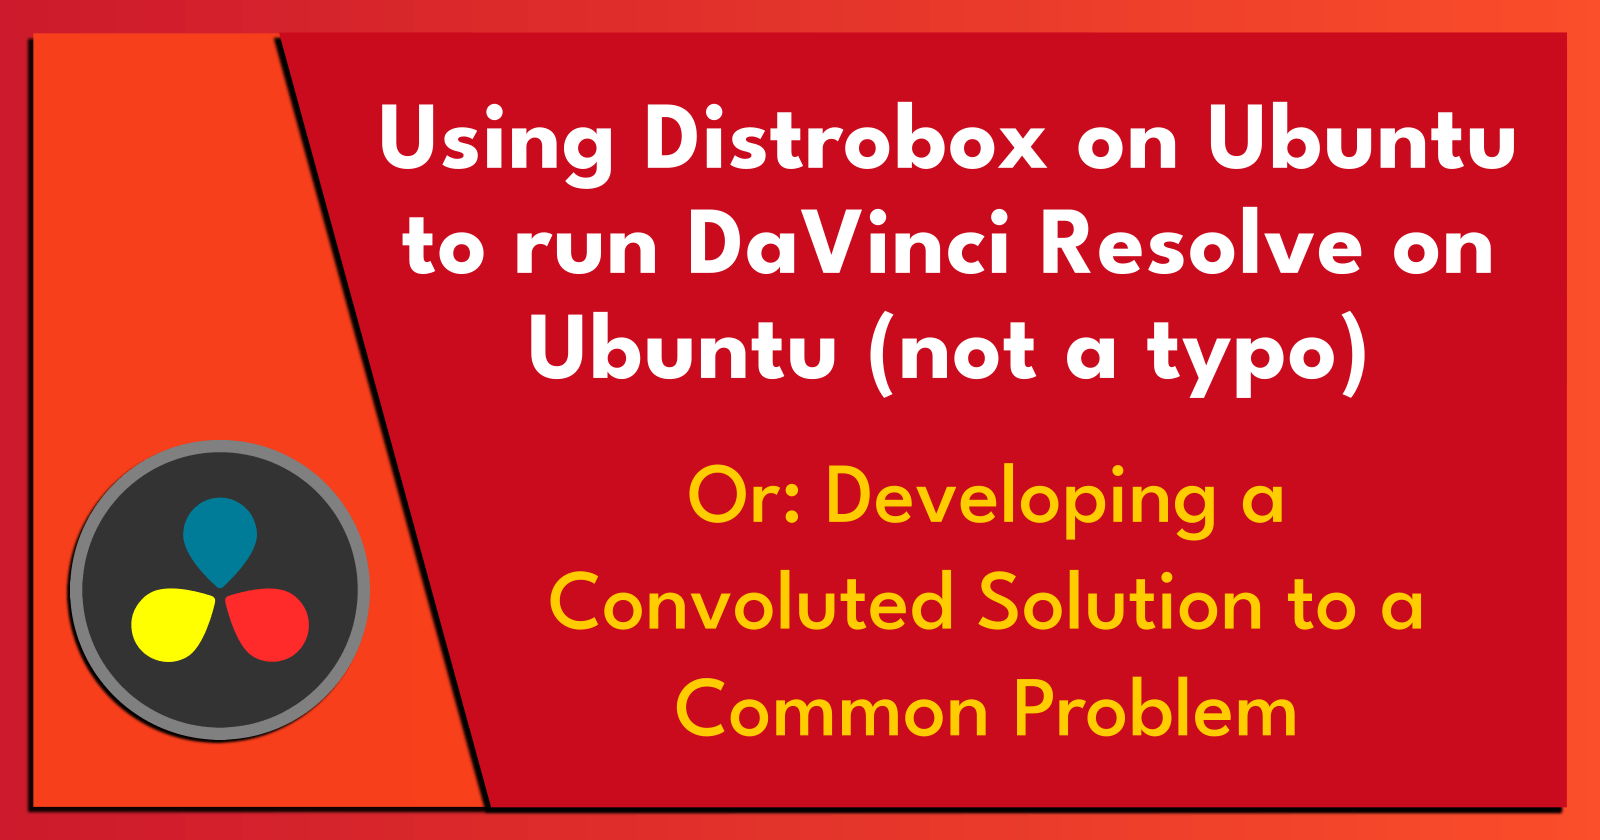 Using Distrobox on Ubuntu to run DaVinci Resolve on Ubuntu (not a typo).